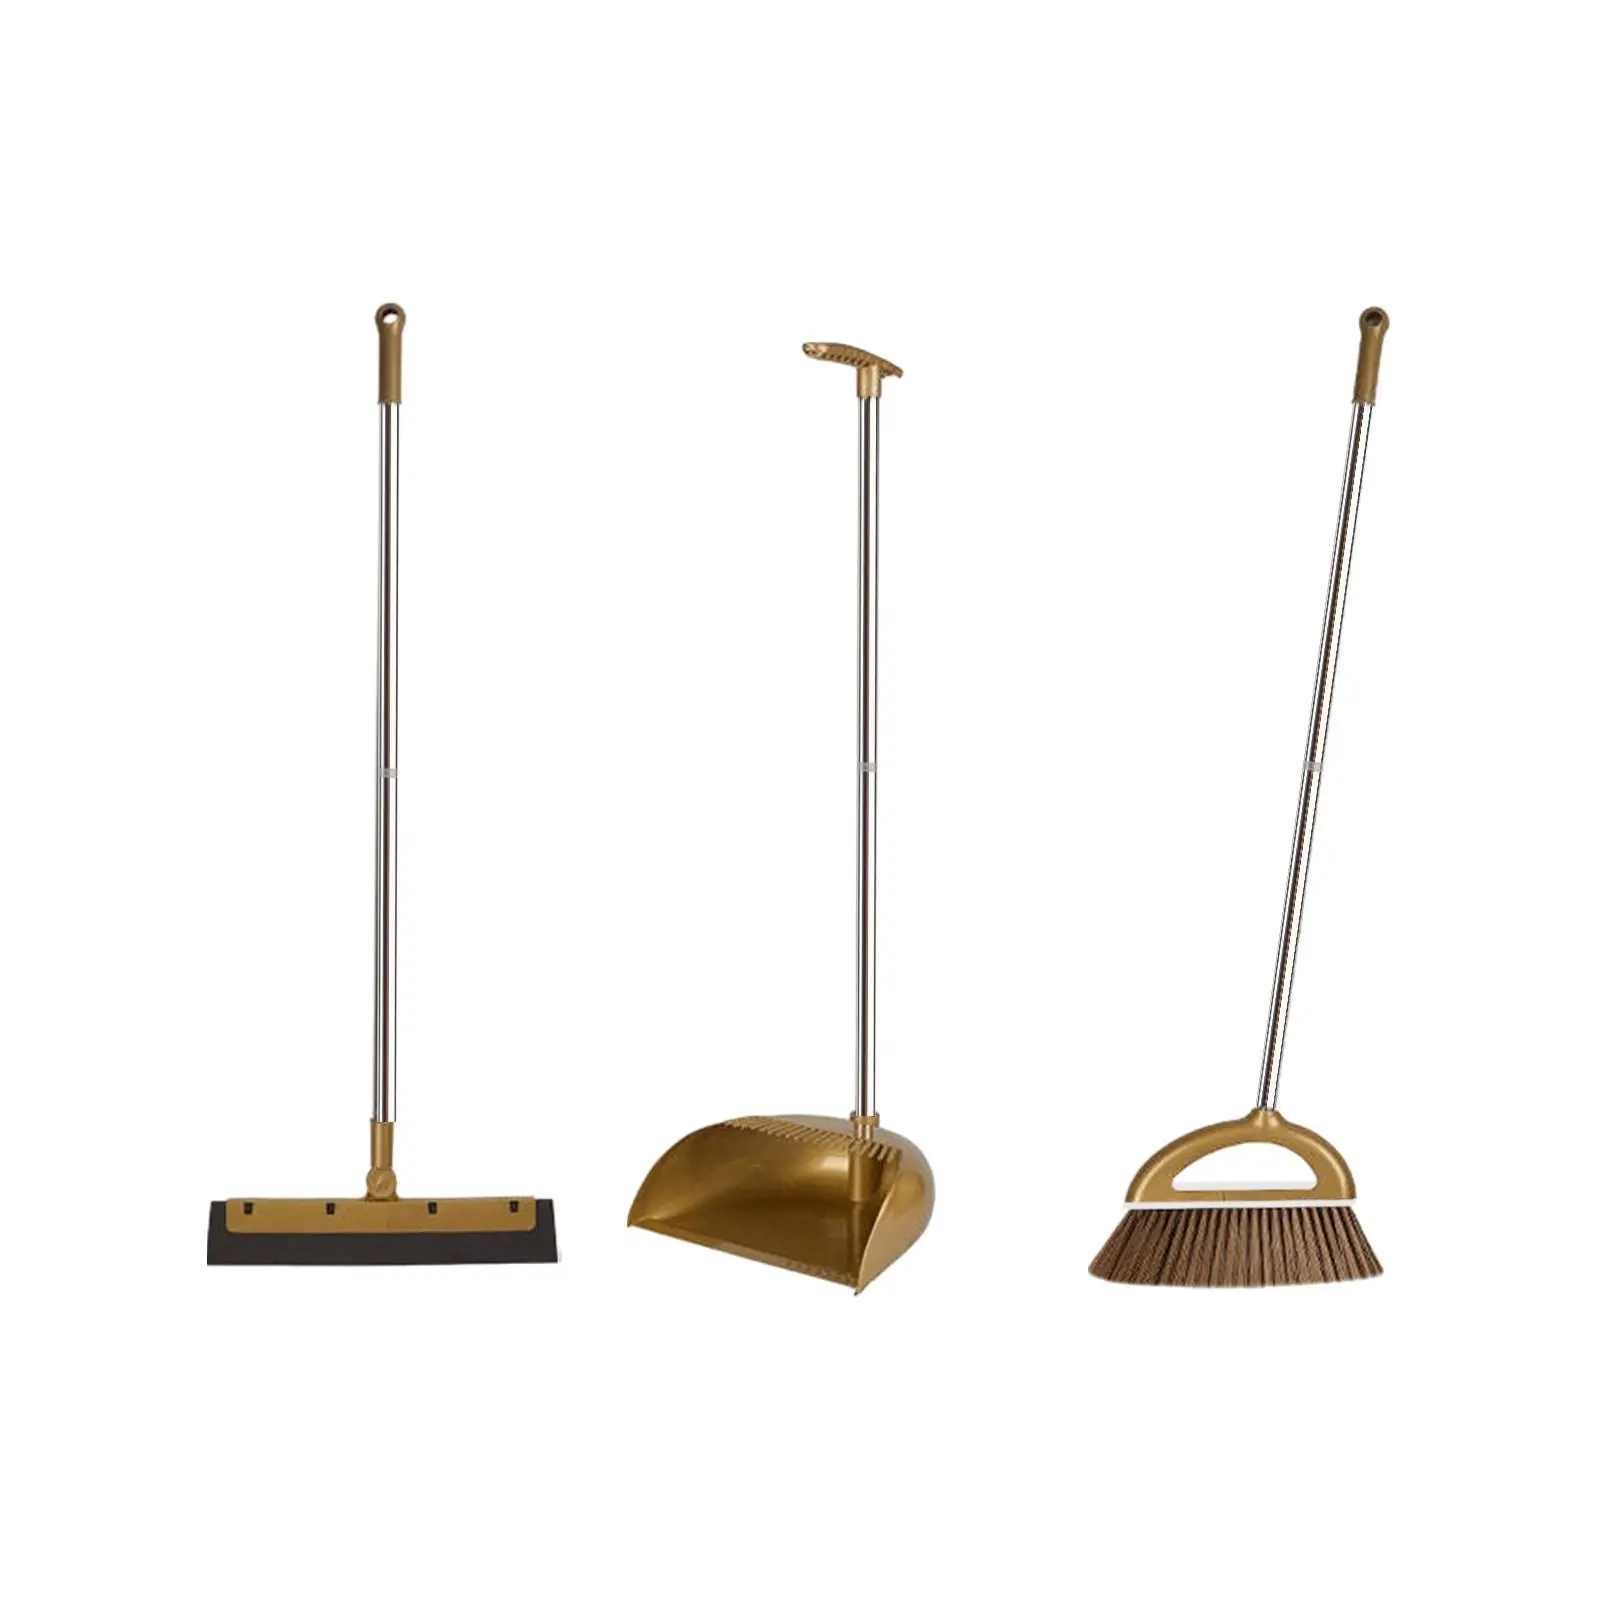 3x Broom and Dustpan Set Floor Wiper Multifunction Dust Brooms Set for Outdoor Kitchen Office Indoor Cleaning Accessories